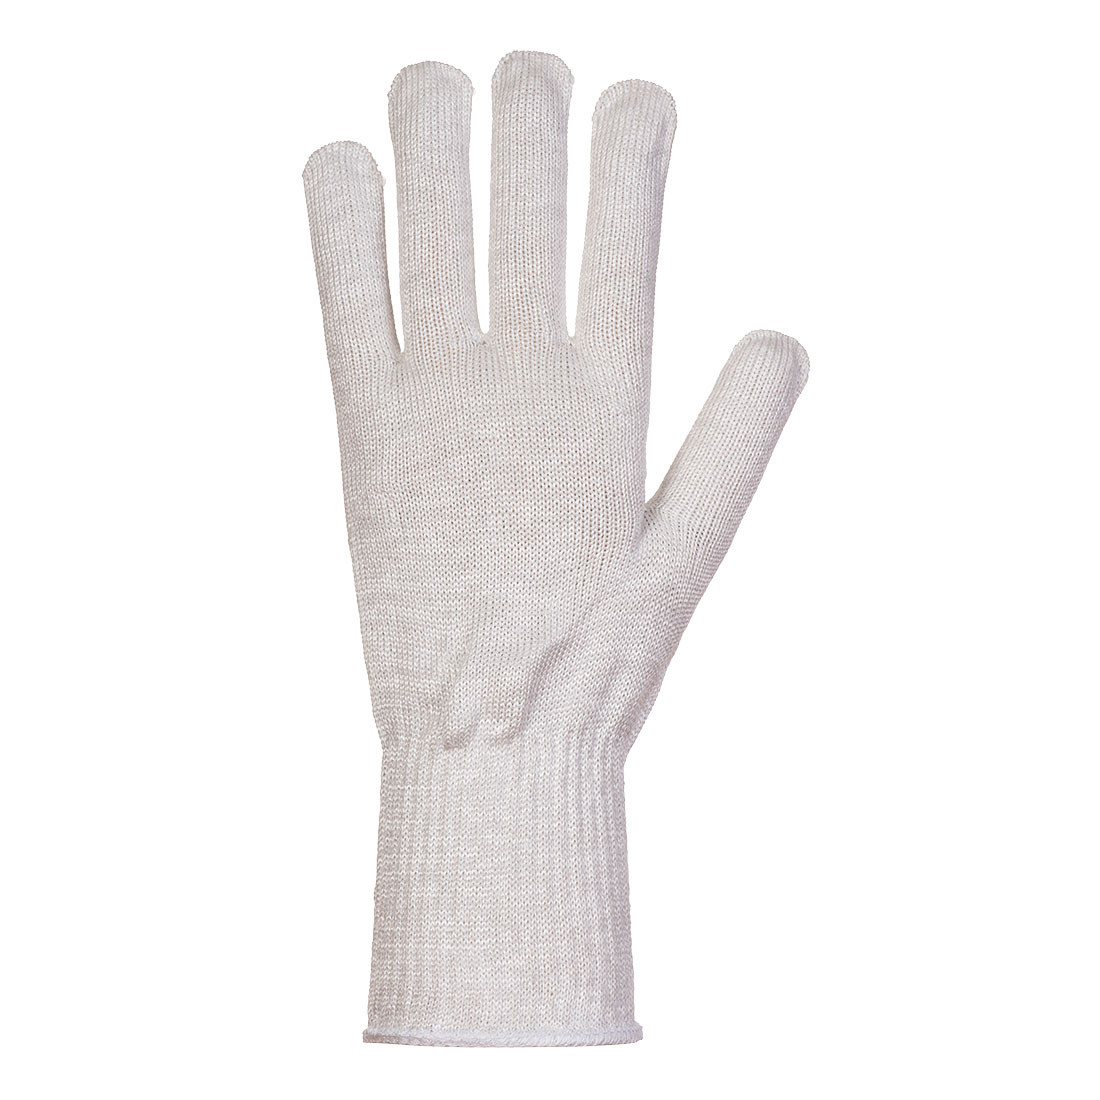 Sous-gants alimentaires AHR 10 - Les équipements de protection individuelle